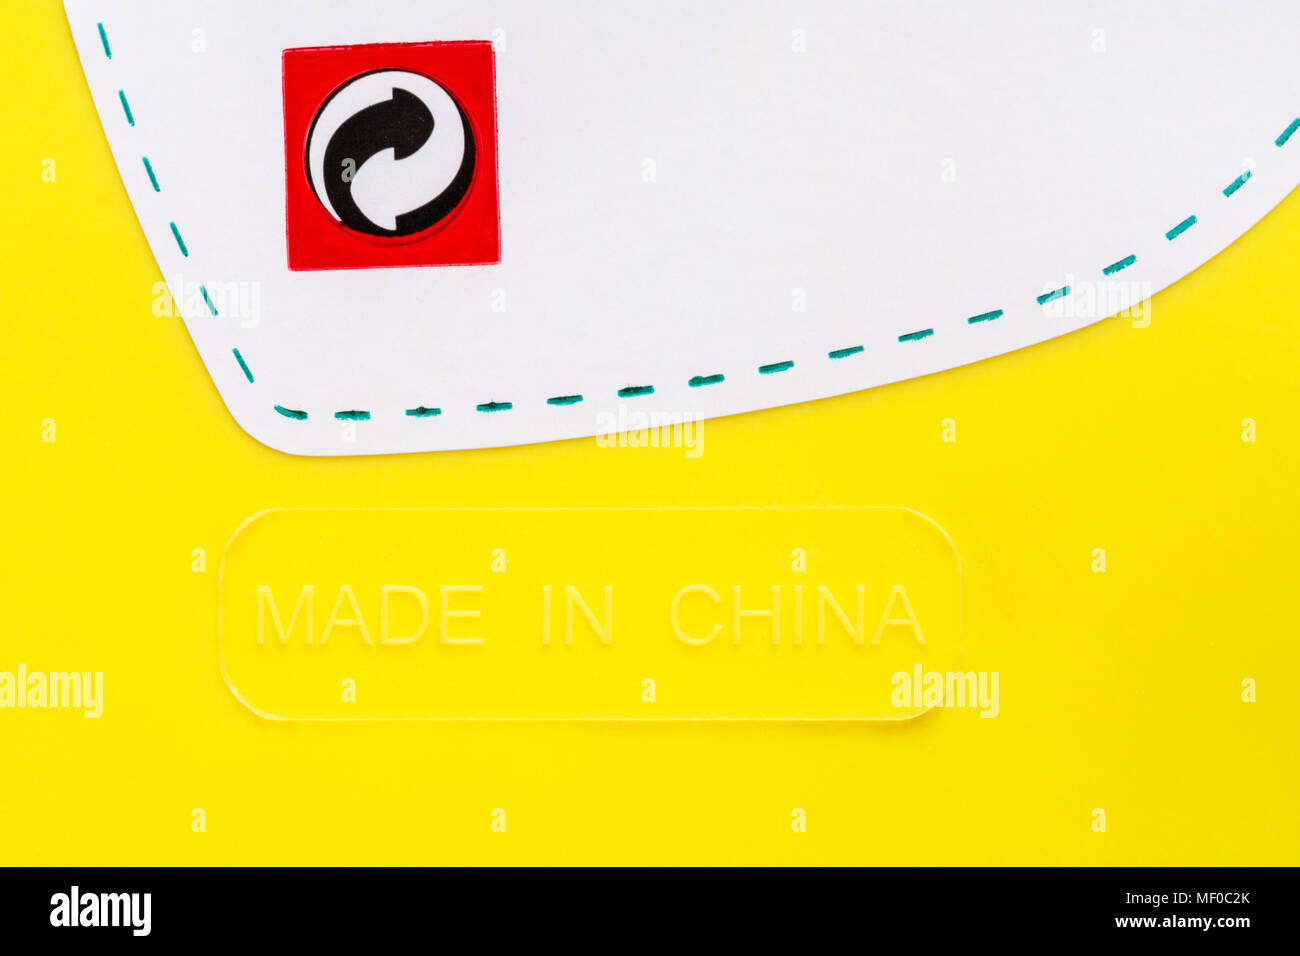 Logo point vert, supposé être le logo, faites en Chine - étiquette sur fond de godet en plastique Banque D'Images